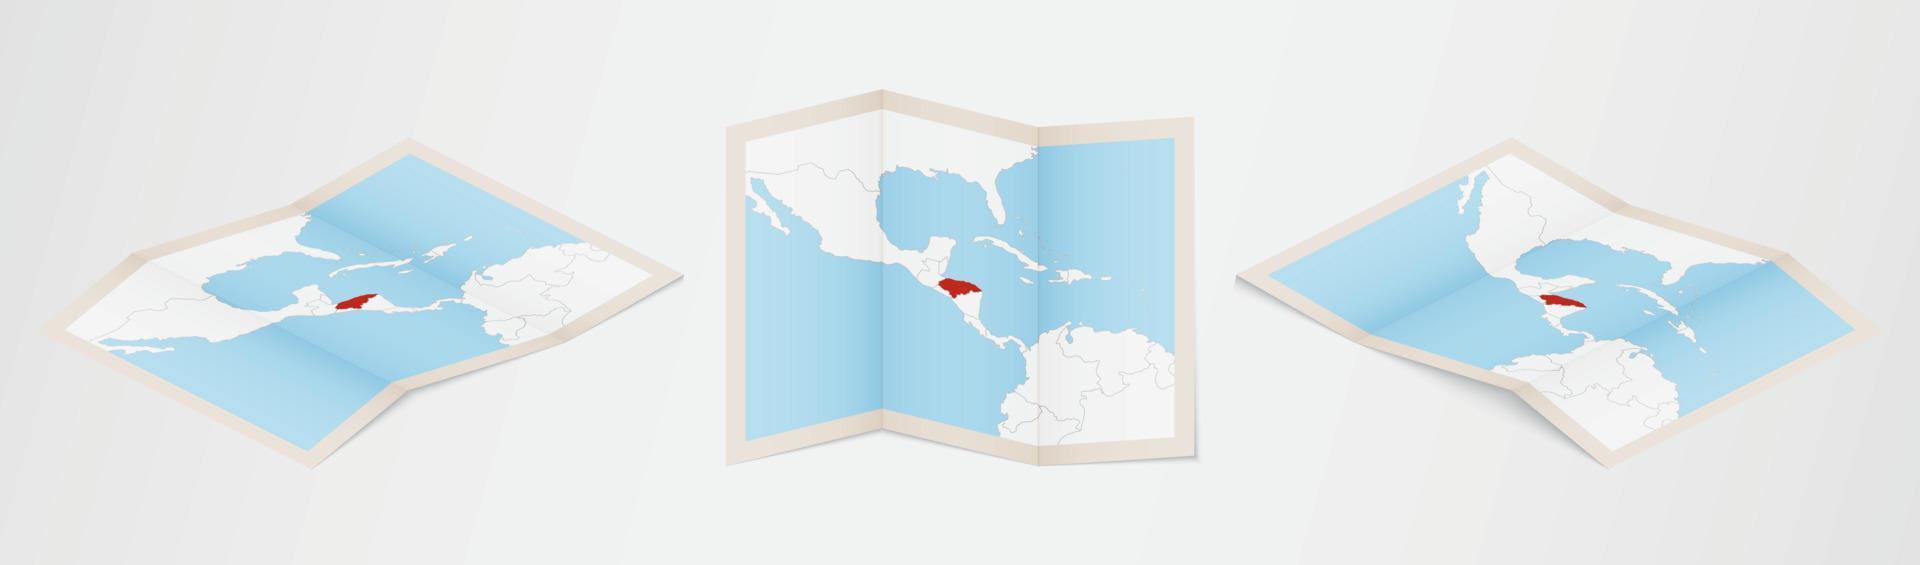 gevouwen kaart van Honduras in drie verschillend versies. vector